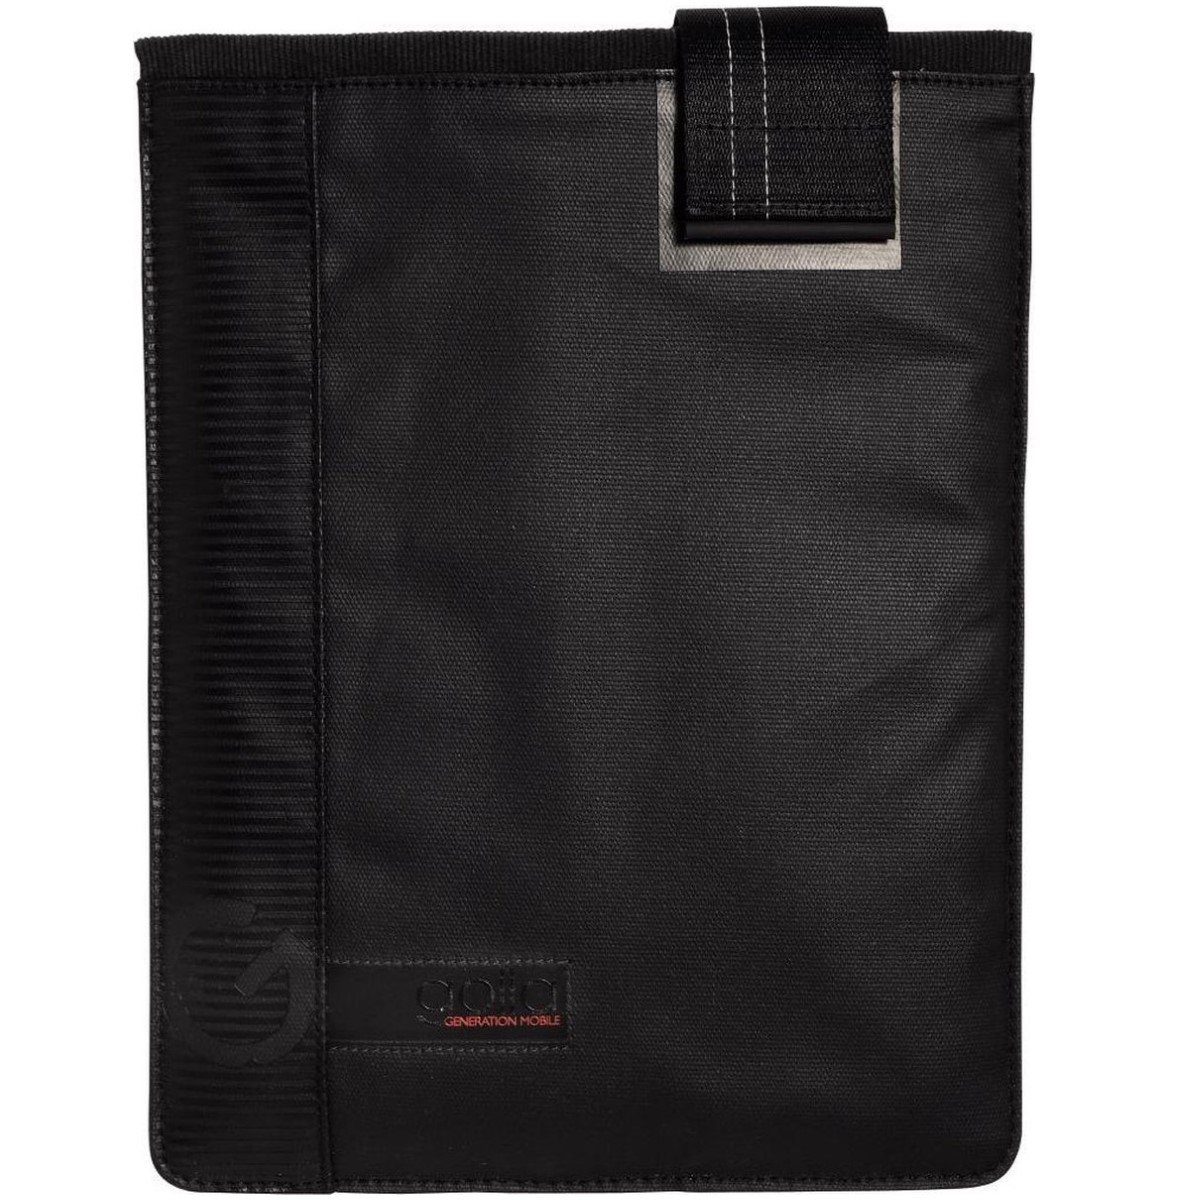 GOLLA Tablet-Hülle Cover Tasche Schutz-Hülle Etui Bag Sleeve, Anti-Kratz,  Tragegriff, Passend für Tablet PC Tab 10" 10,1" 10,2" 10,5" 10,8"